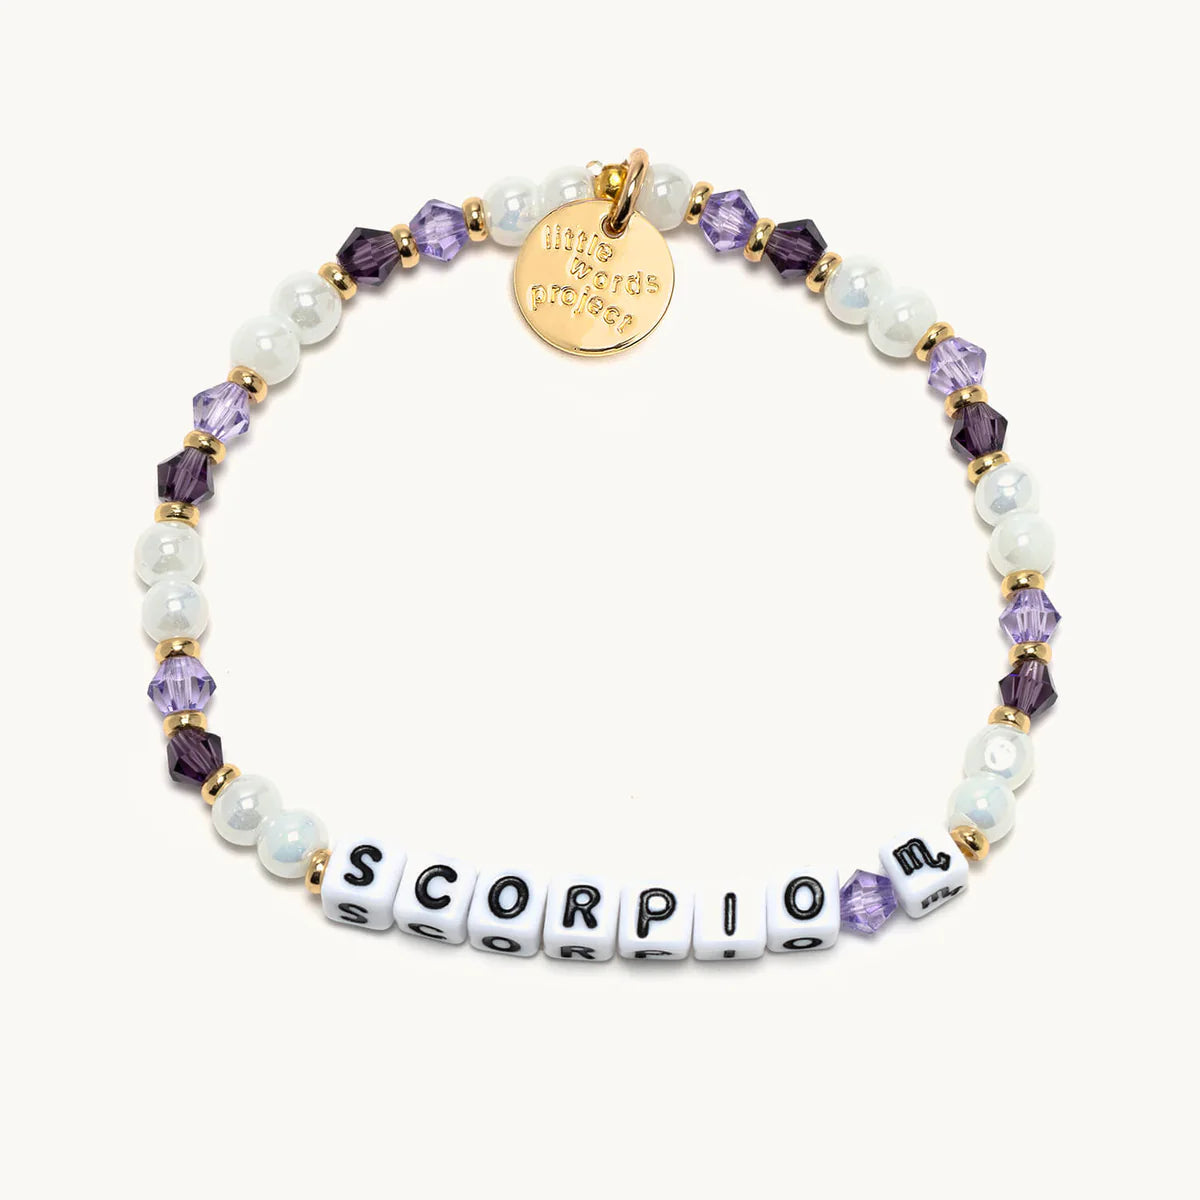 Little Words Project Scorpio Zodiac Pluto Bracelet